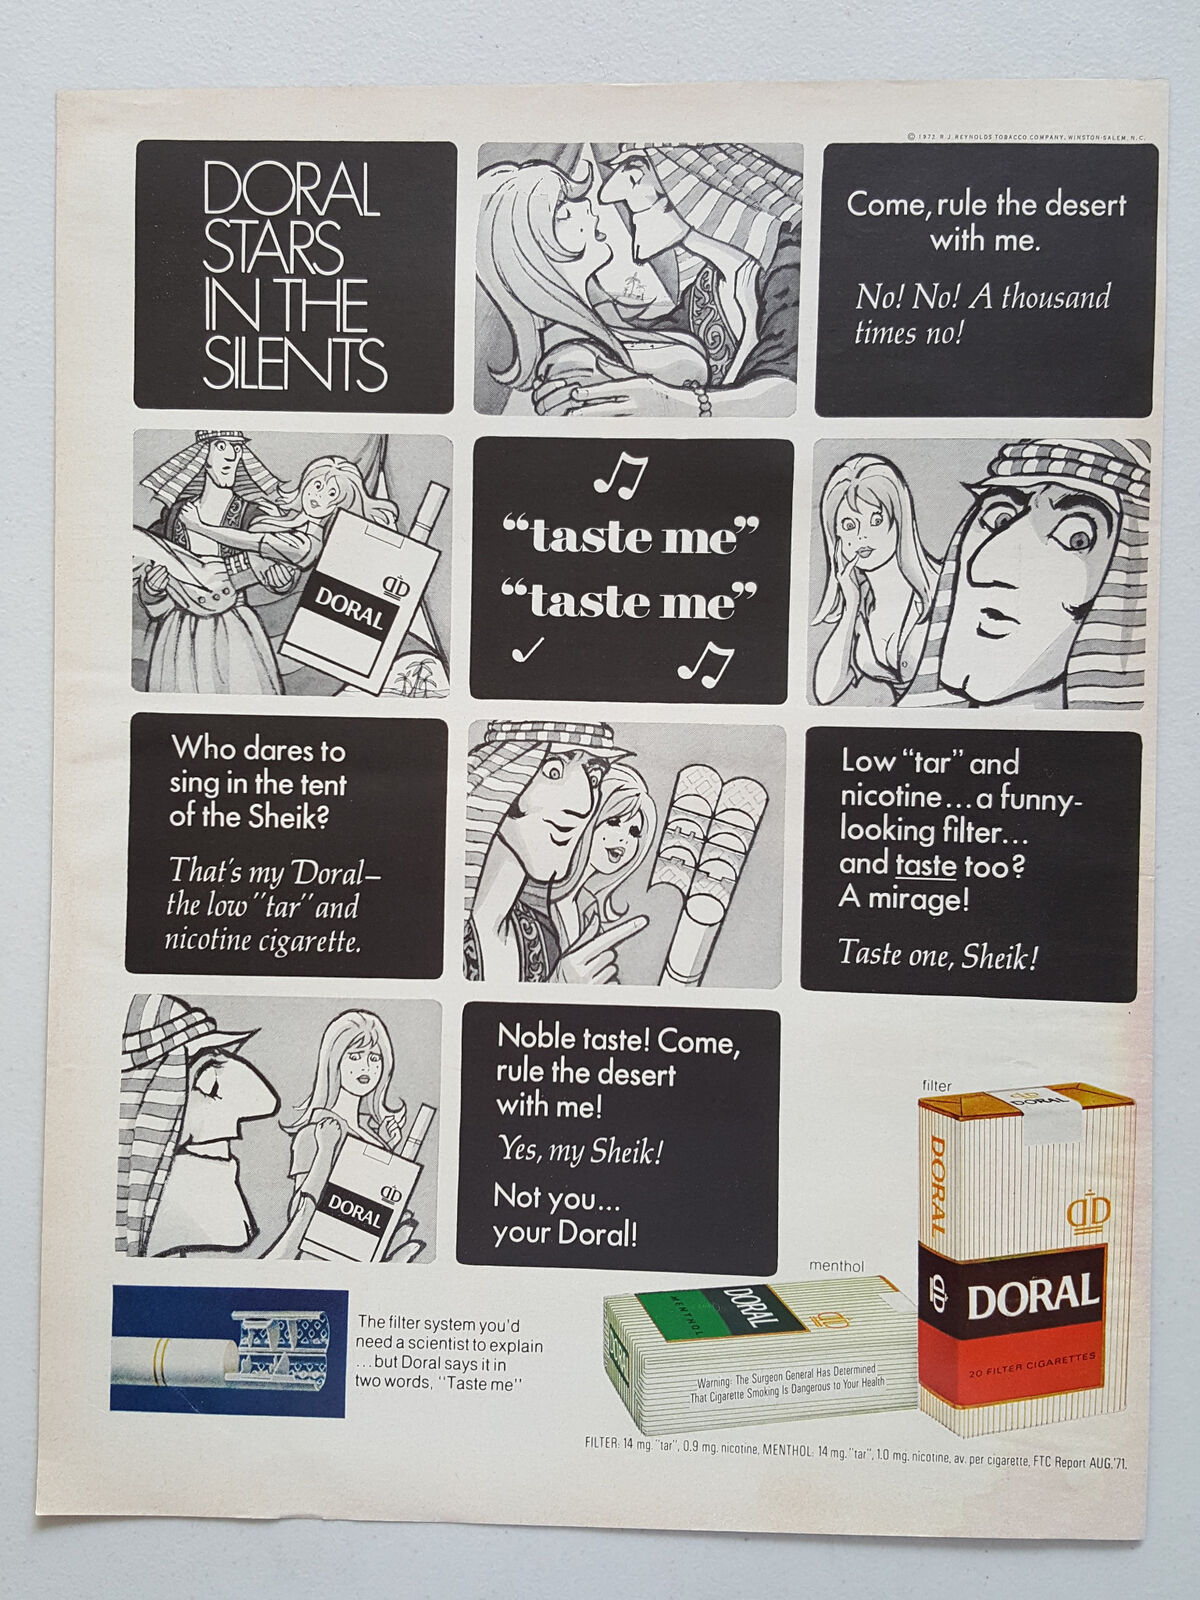 1972 Doral Filter Cigarettes Sheik Comic Strip Vtg Magazine Print Ad